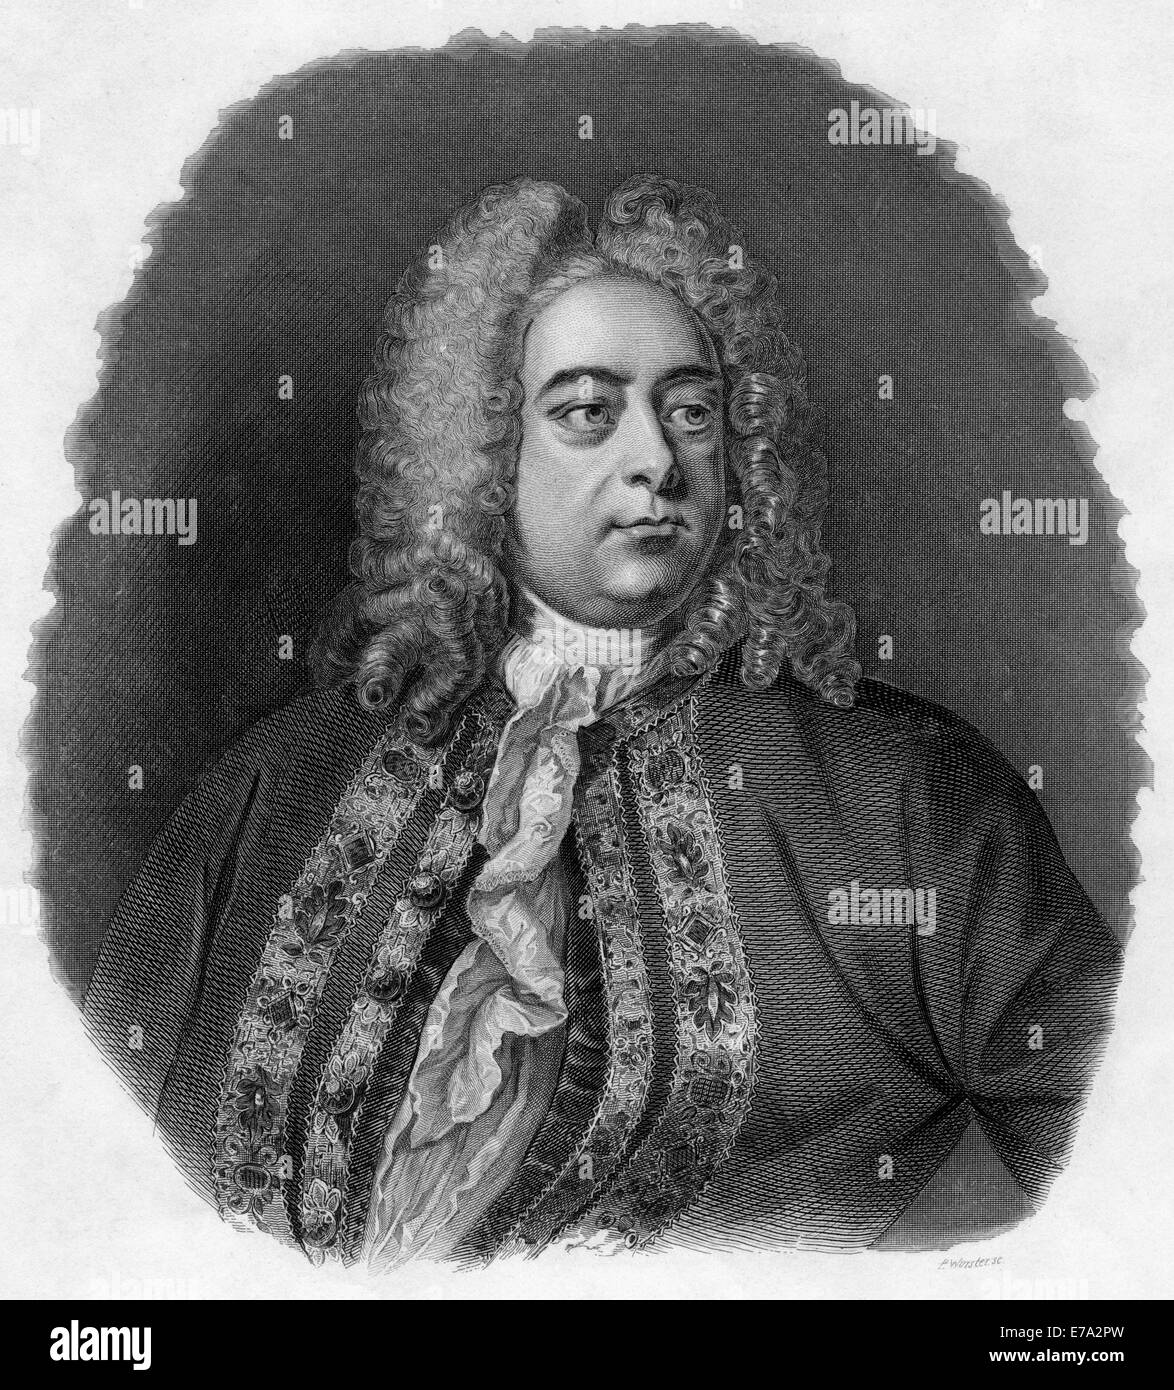 George Frideric Handel (1685-1759), compositor barroco, Retrato, grabado, 1856 Foto de stock